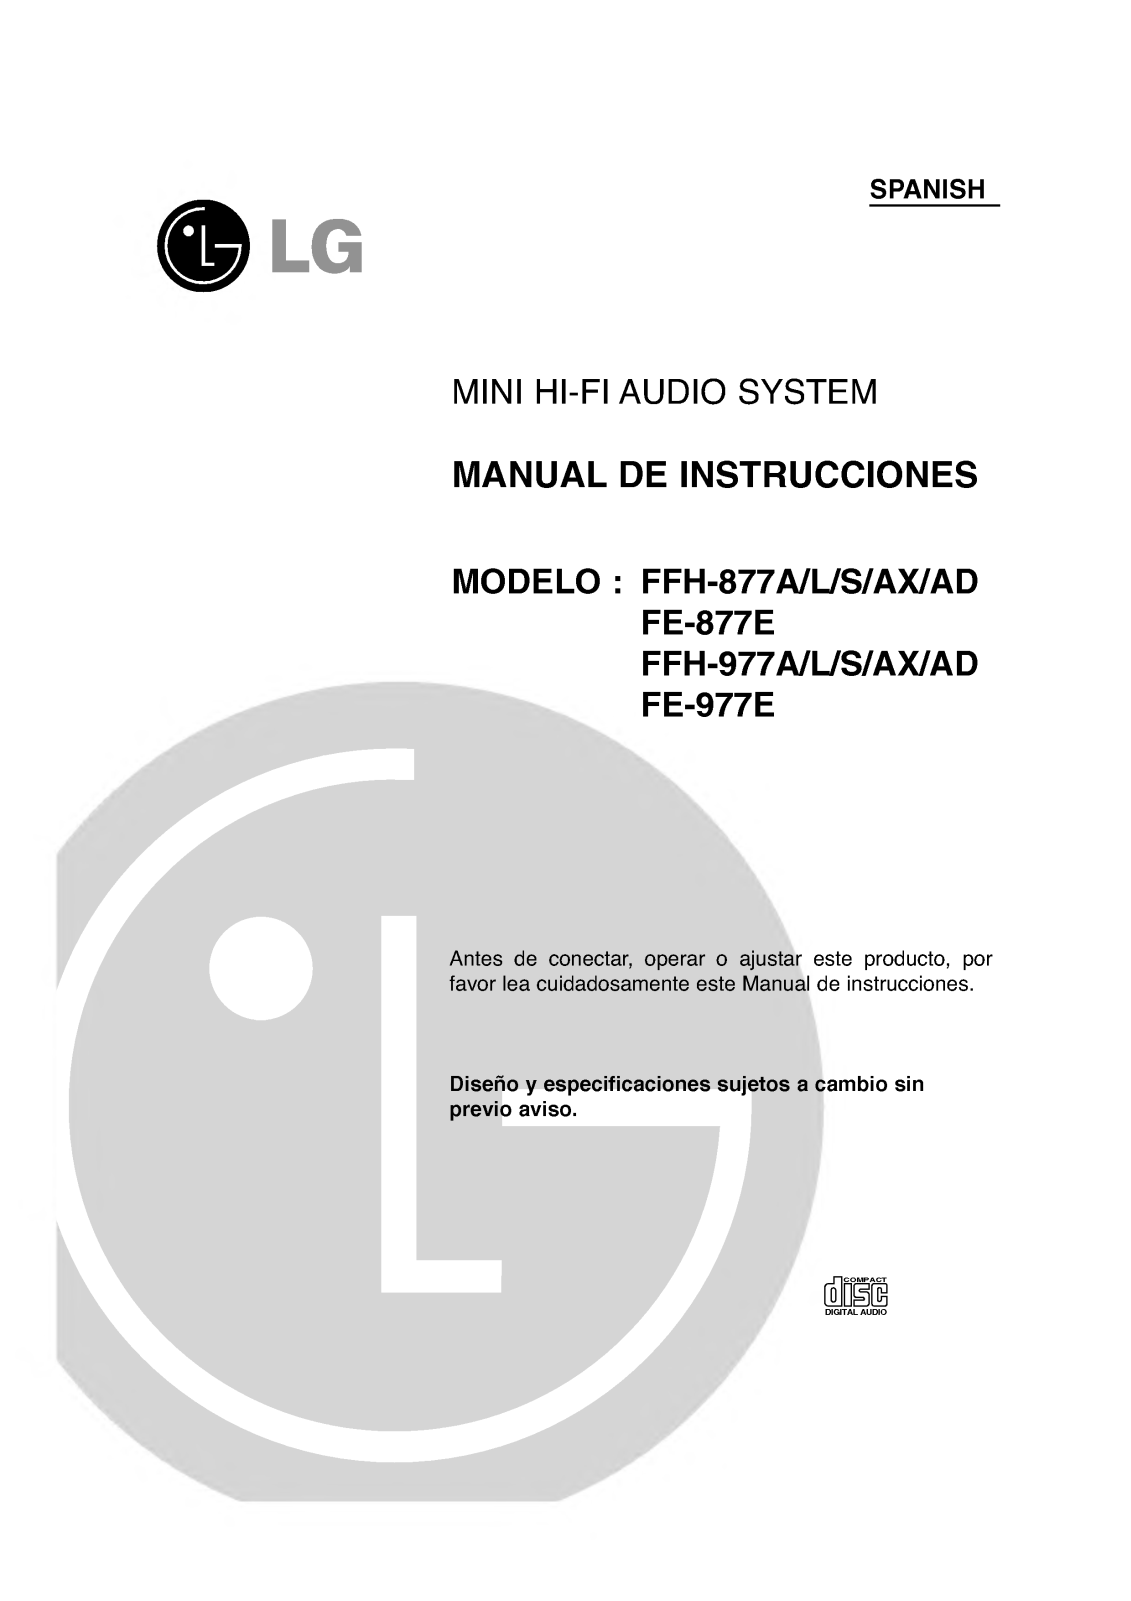 Lg FFH-977A, FFH-977L, FFH-977S, FFH-977AX, FFH-977AD Instructions Manual